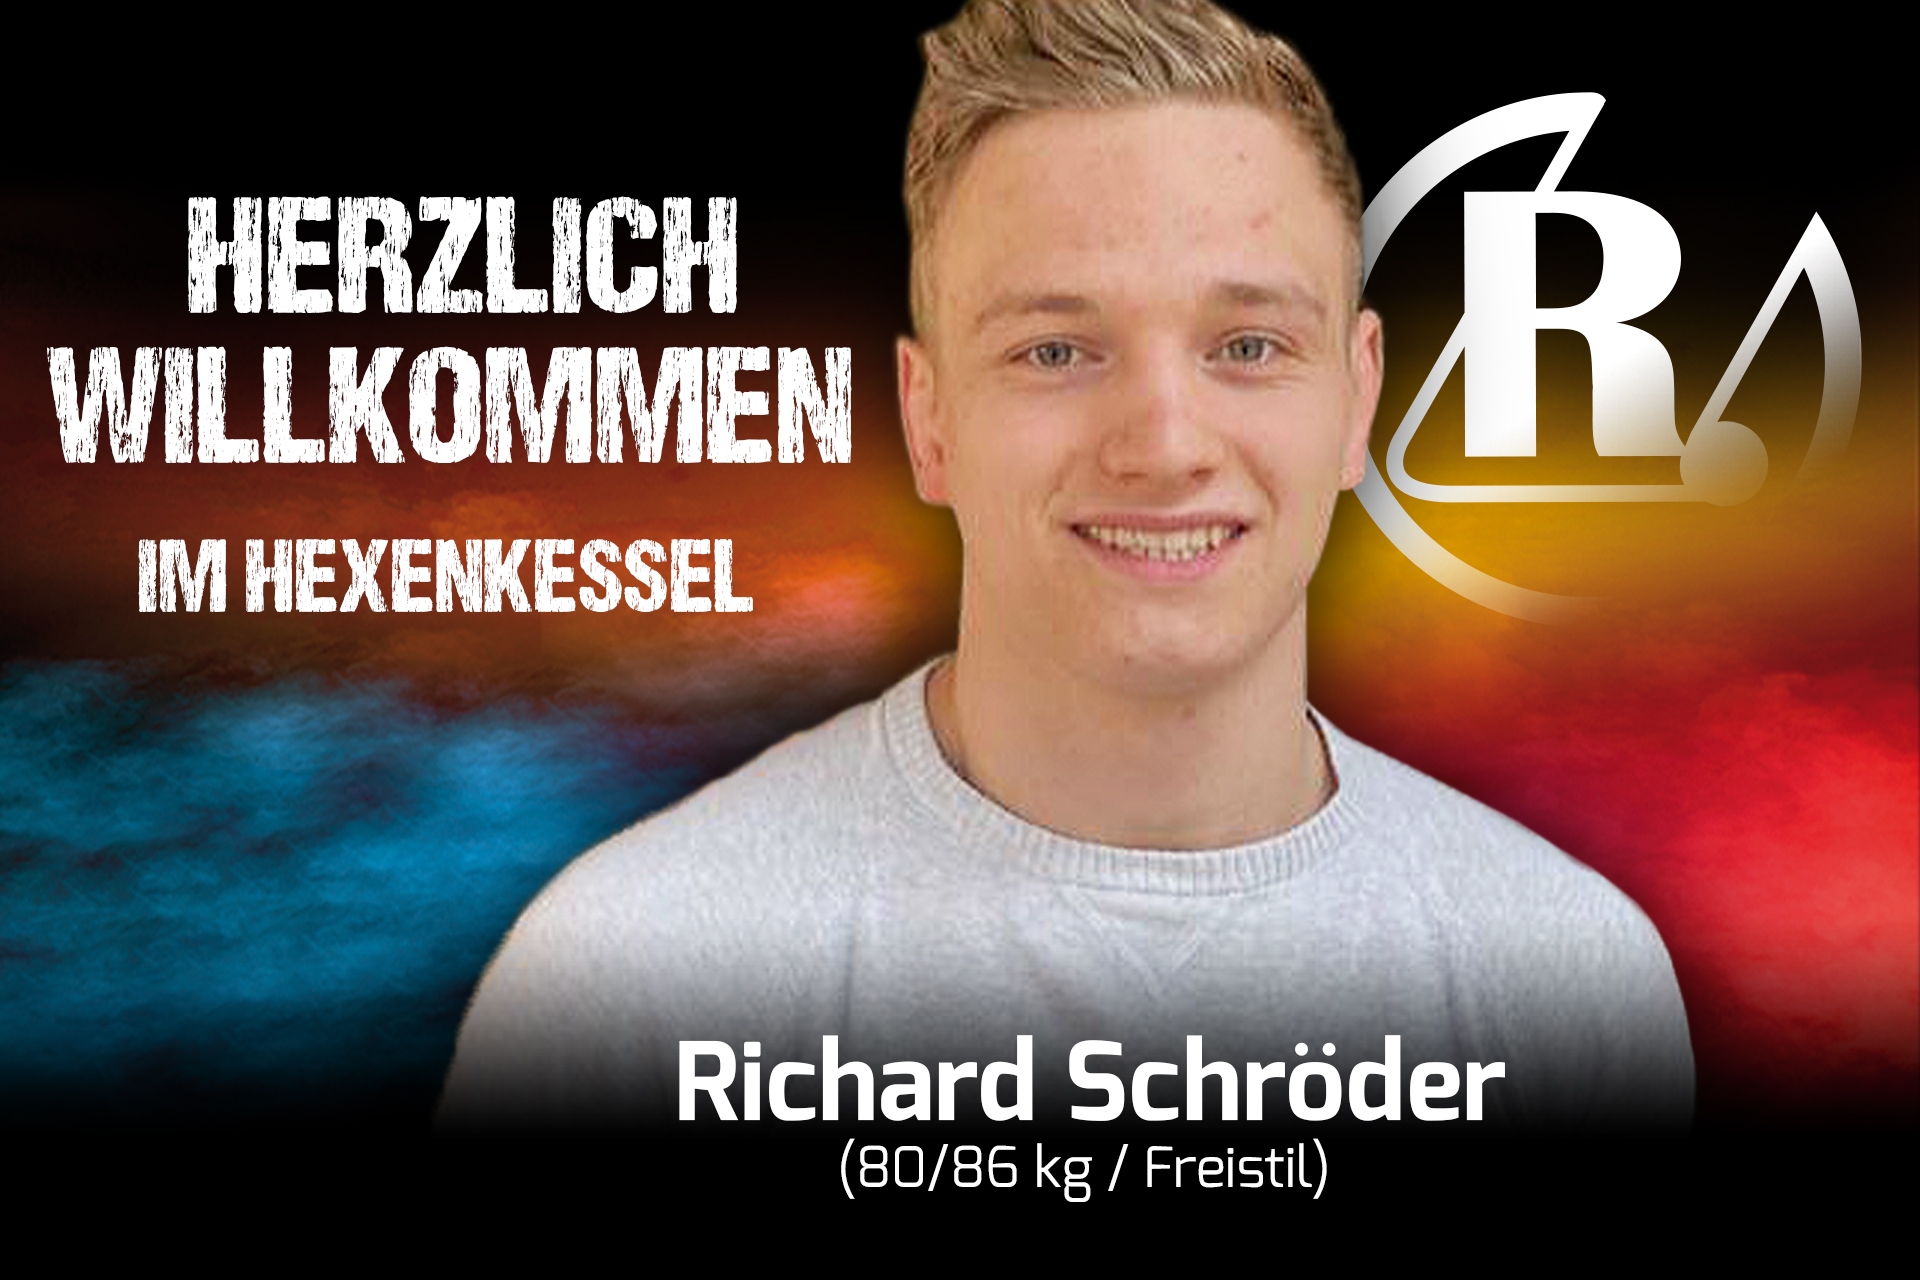 Richard Schröder